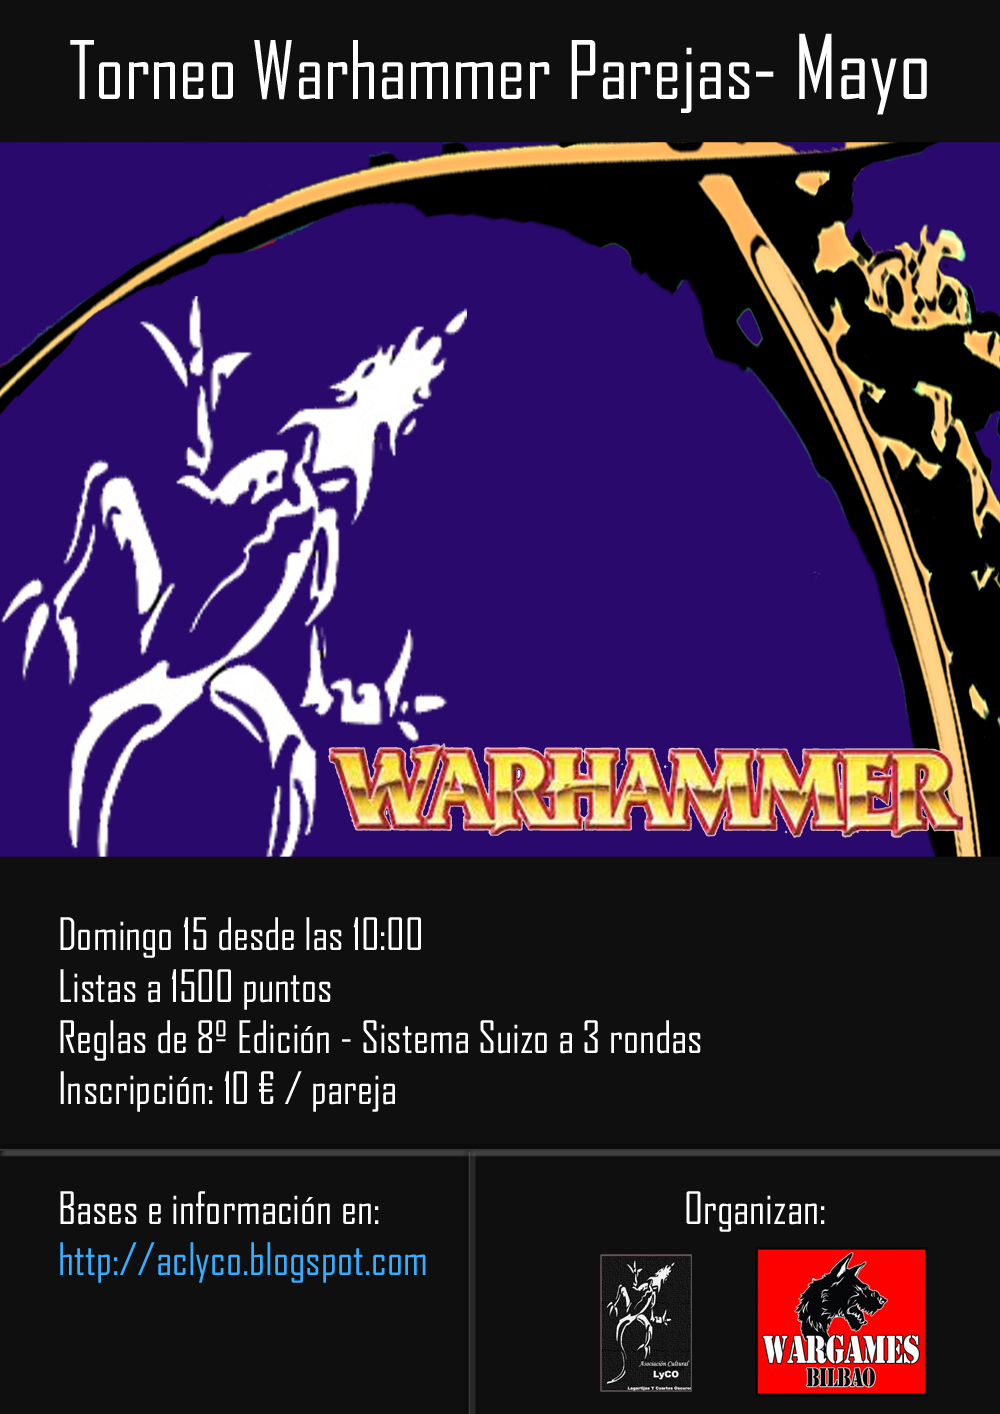 Torneo de Warhammer Bilbao  por PAREJAS Domingo 15 de Mayo Fantasy-Mayo+Mini